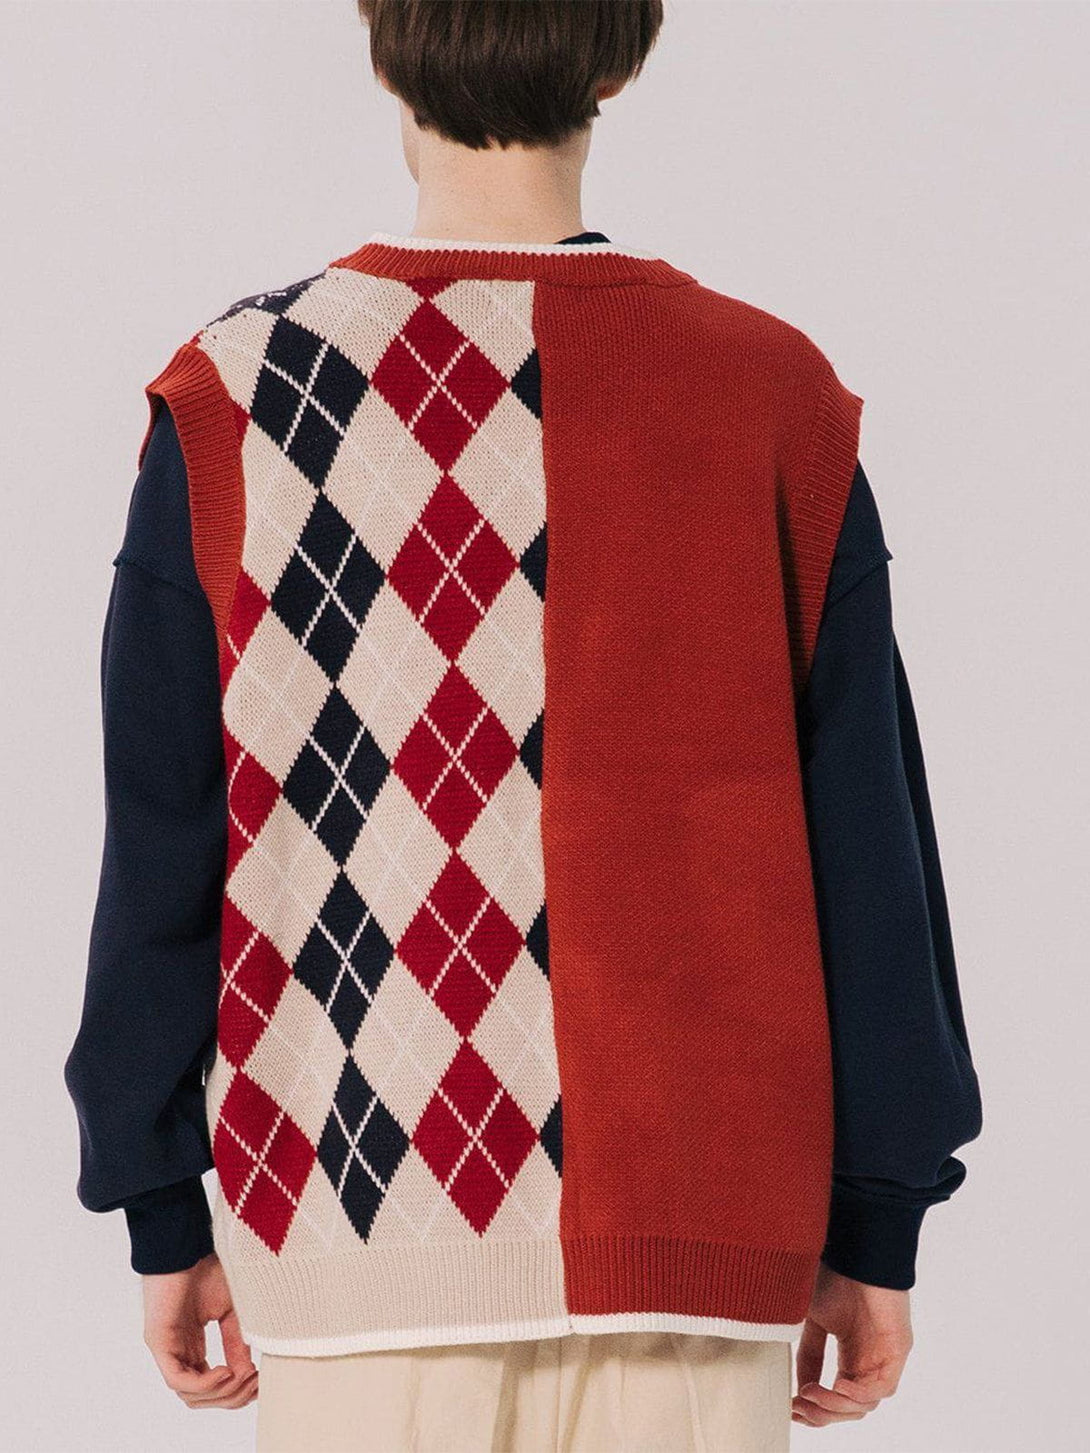 AlanBalen® - Stitching Diamond Pattern Sweater Vest AlanBalen